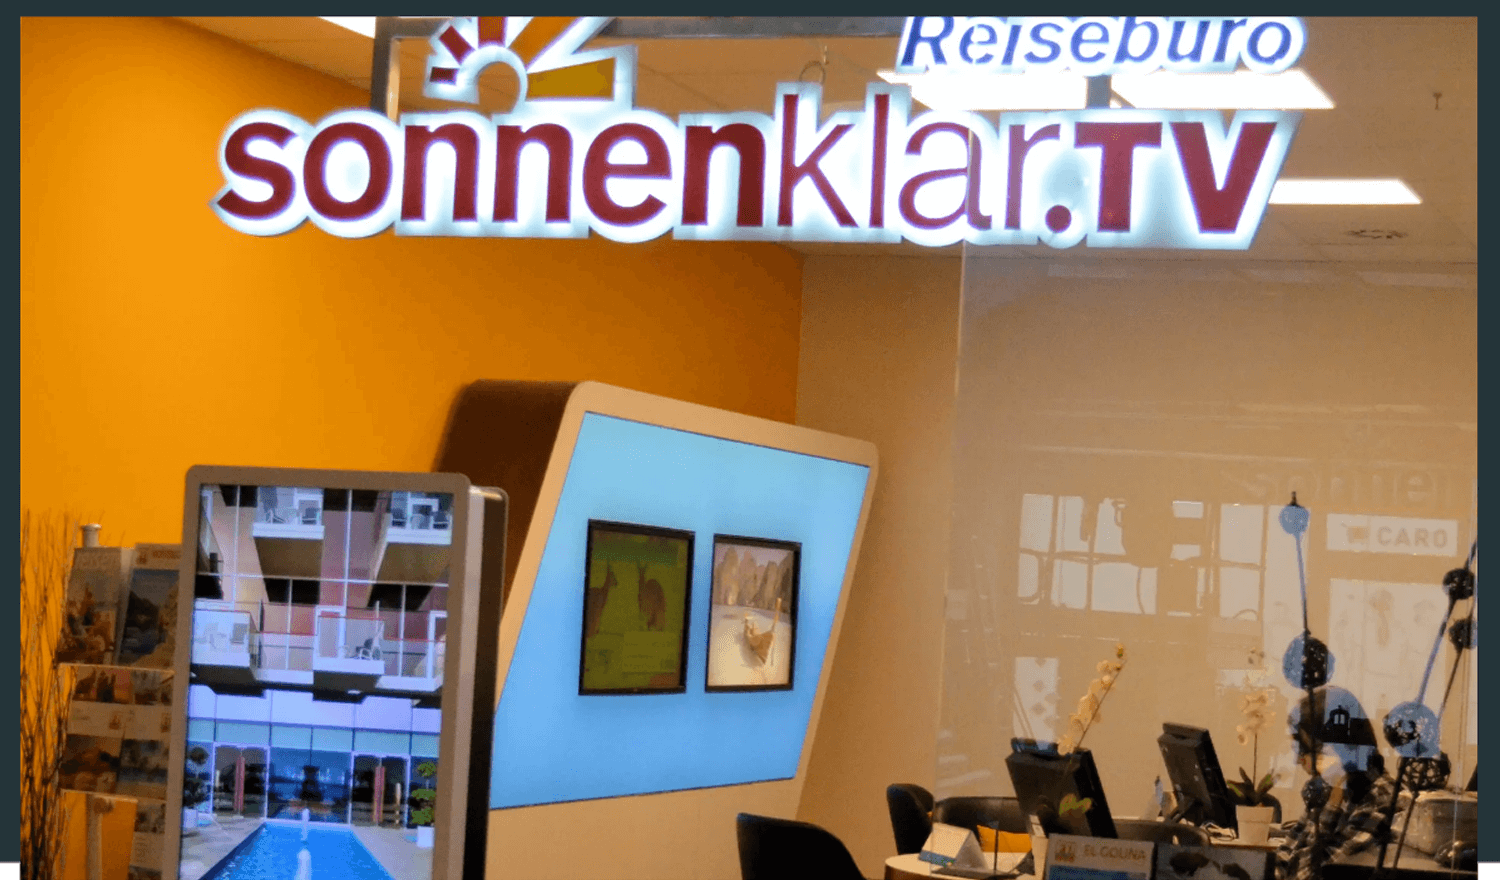 caro Service und Freizeit Reisebüro Sonnenklar TV